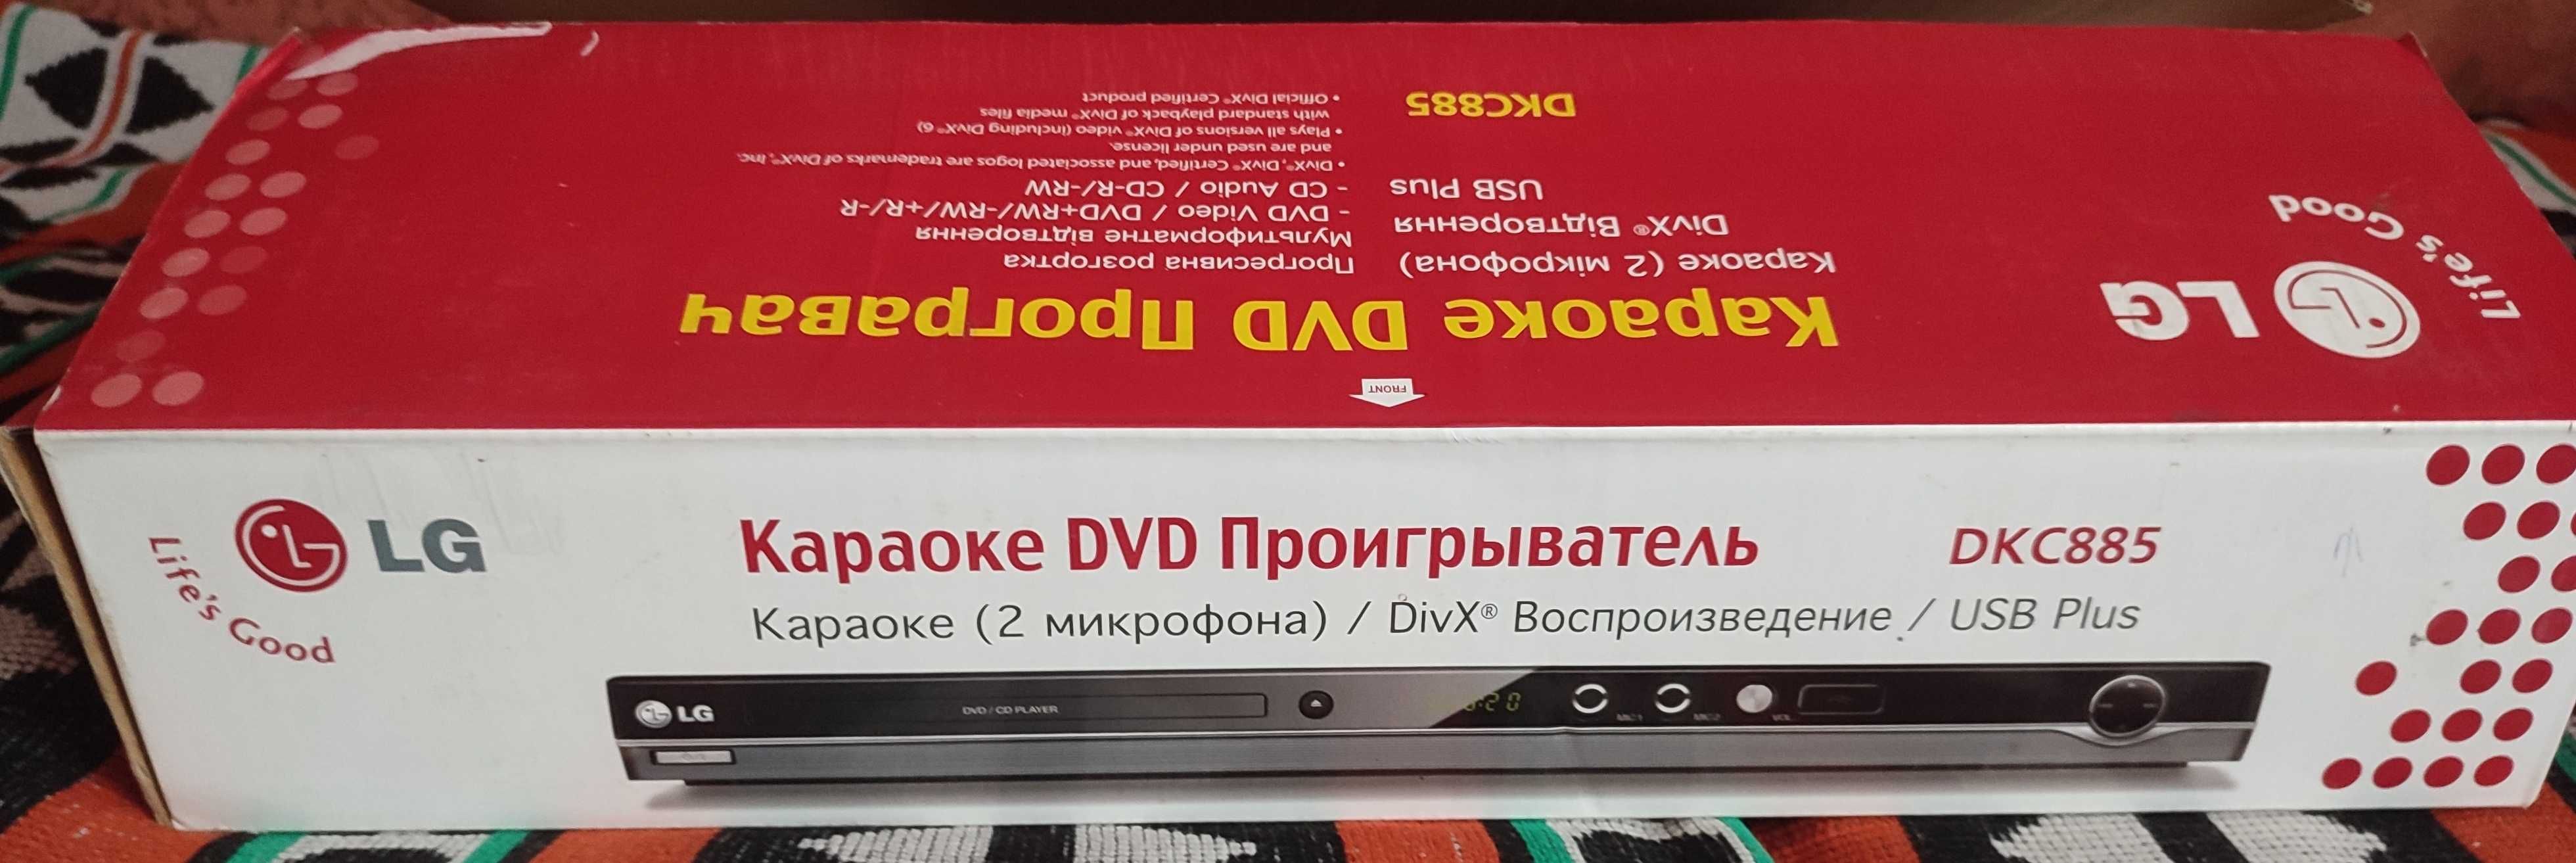 Караоке DVD програвач DKC885